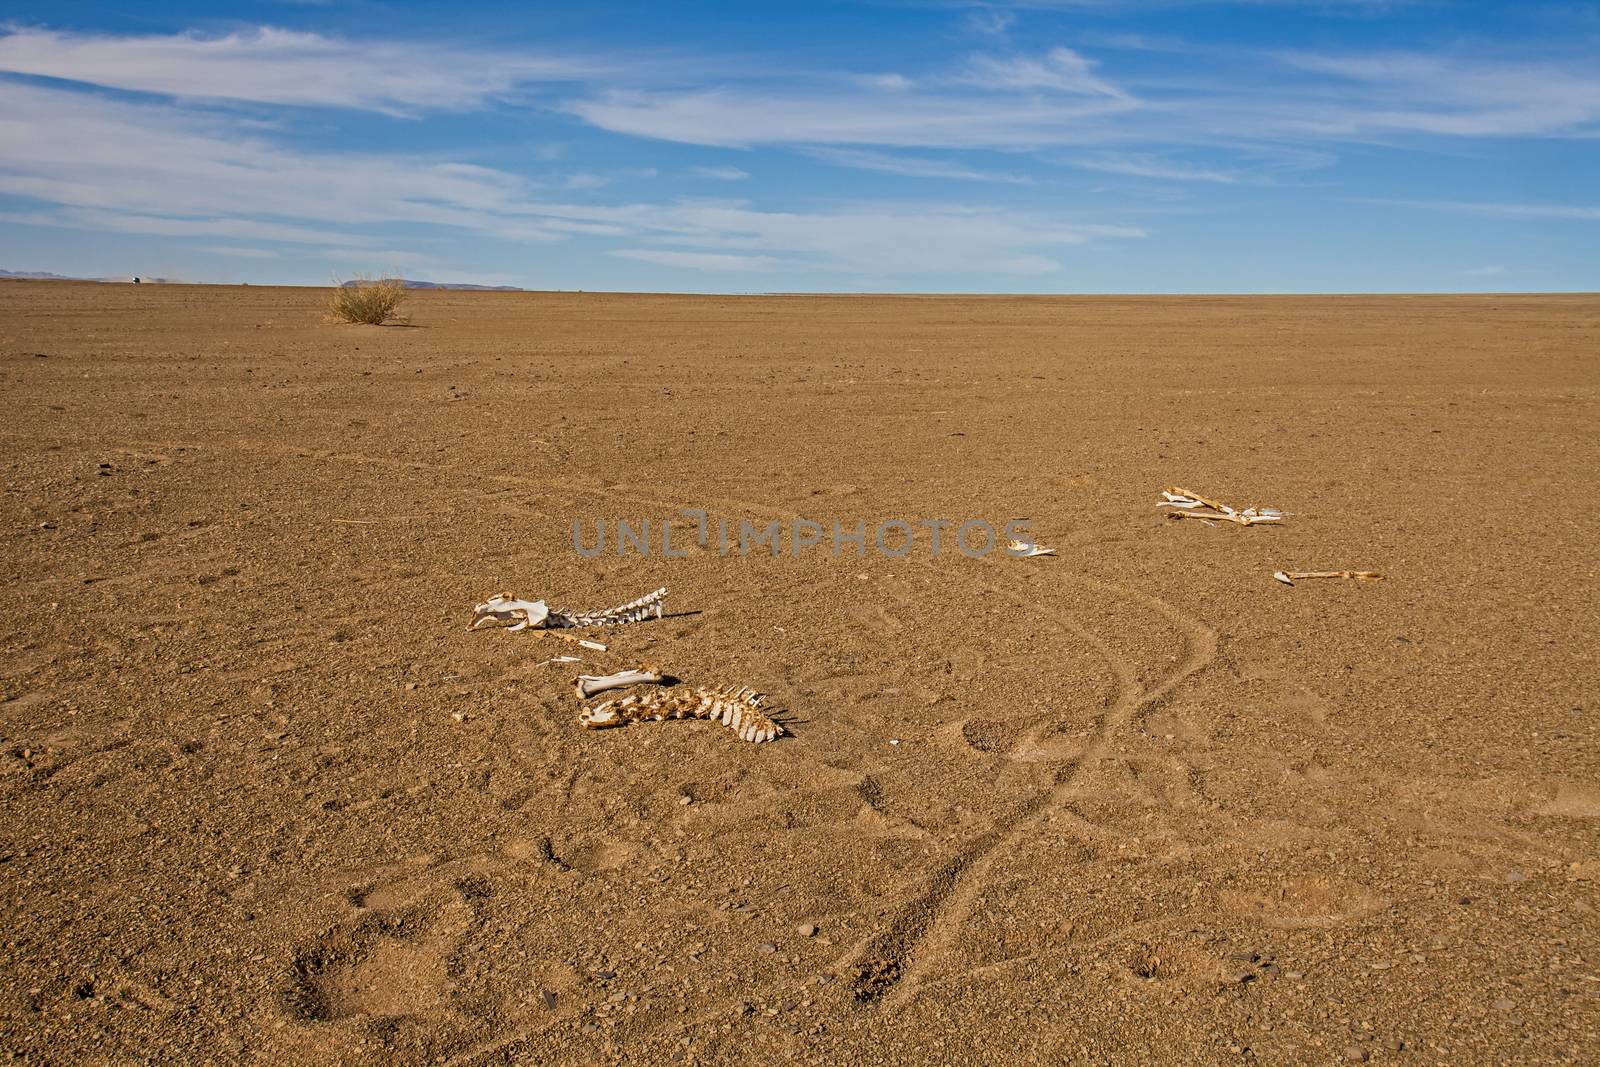 Namibian desert landscape 5 by kobus_peche